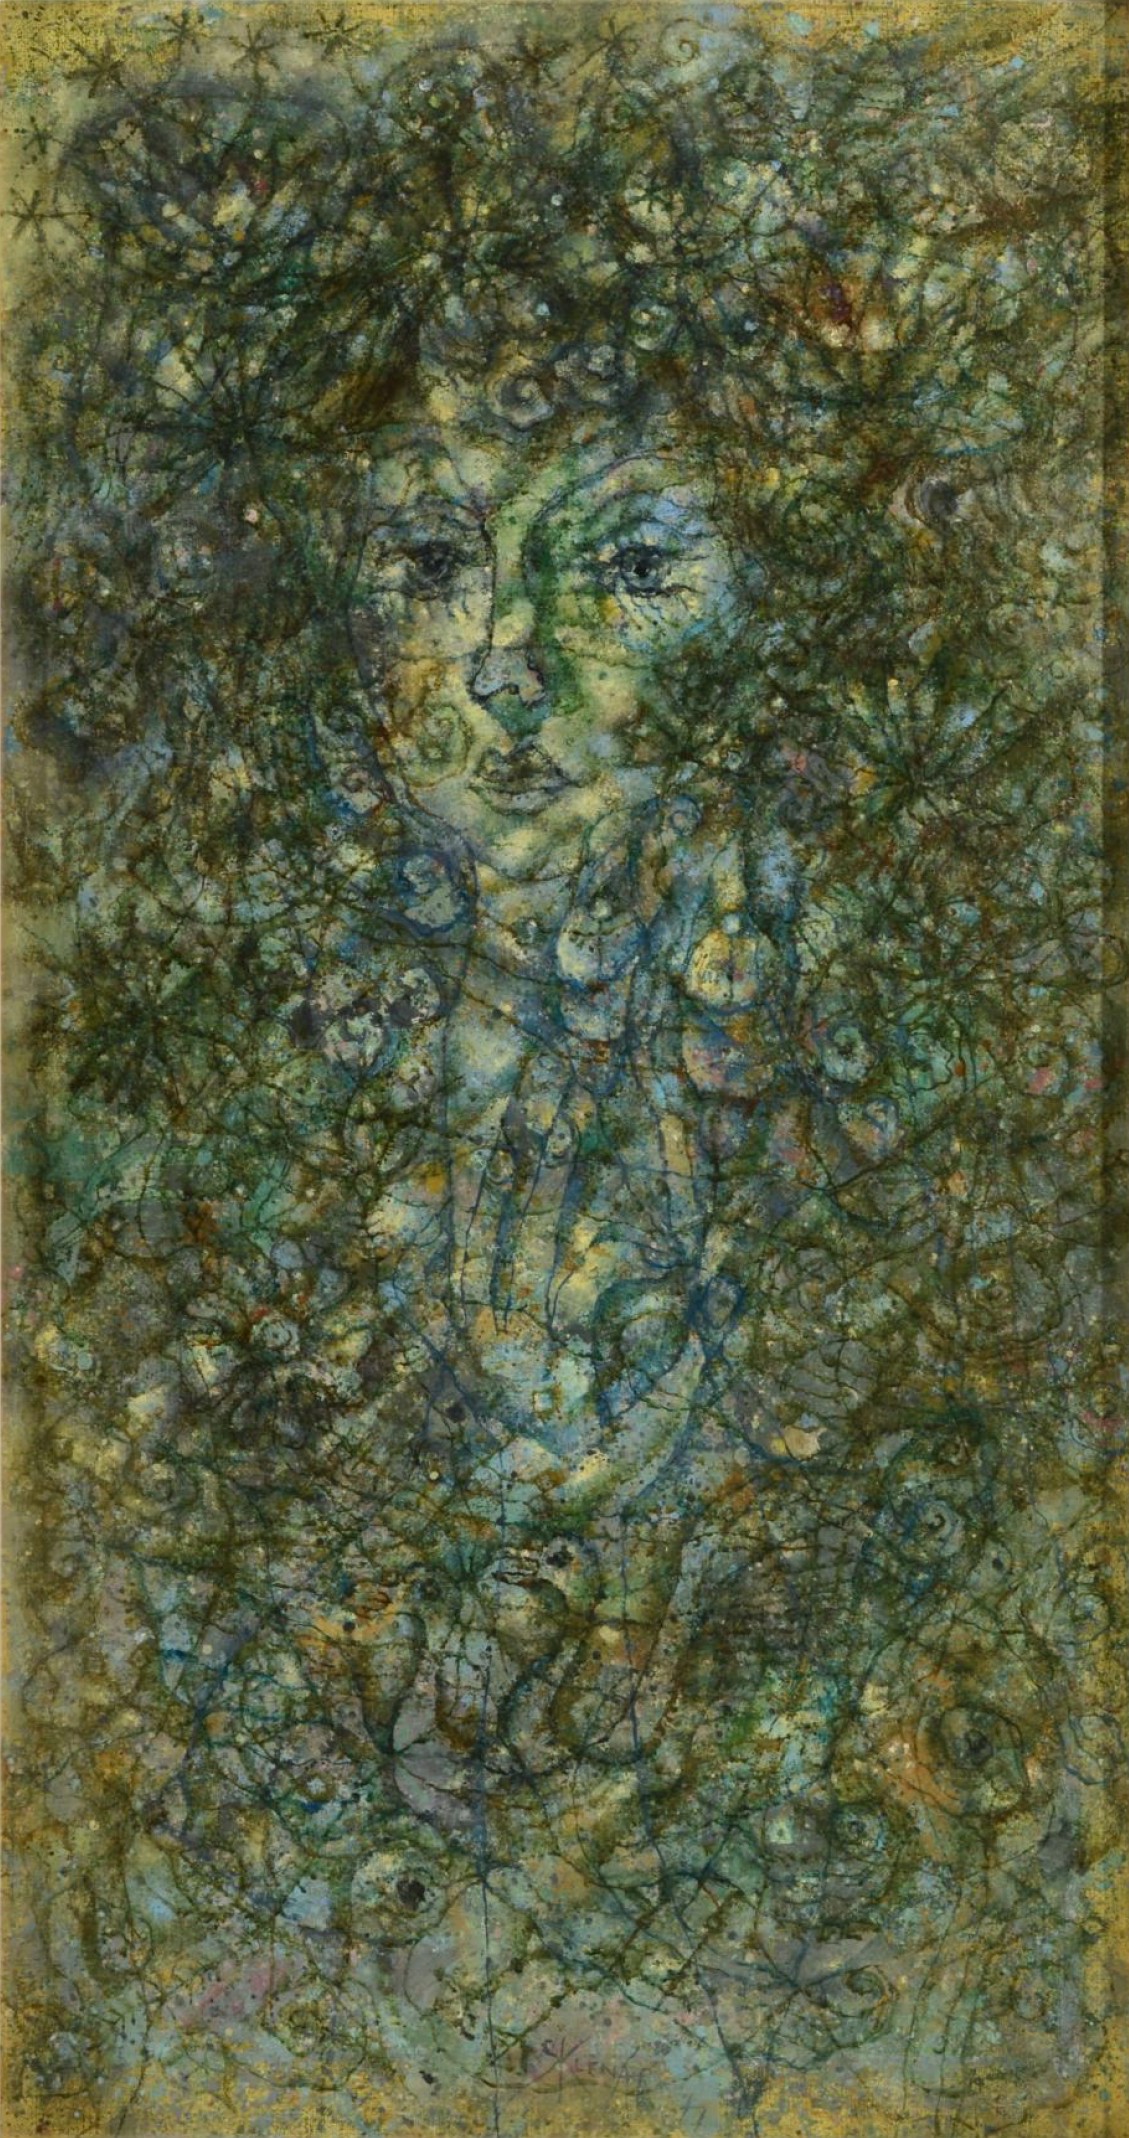 Zdeněk Sklenář: Poesie, 1977, olej na plátně, 99,5 x 53 cm, Zezula 28. 5. 2022, cena: 6 840 000 Kč